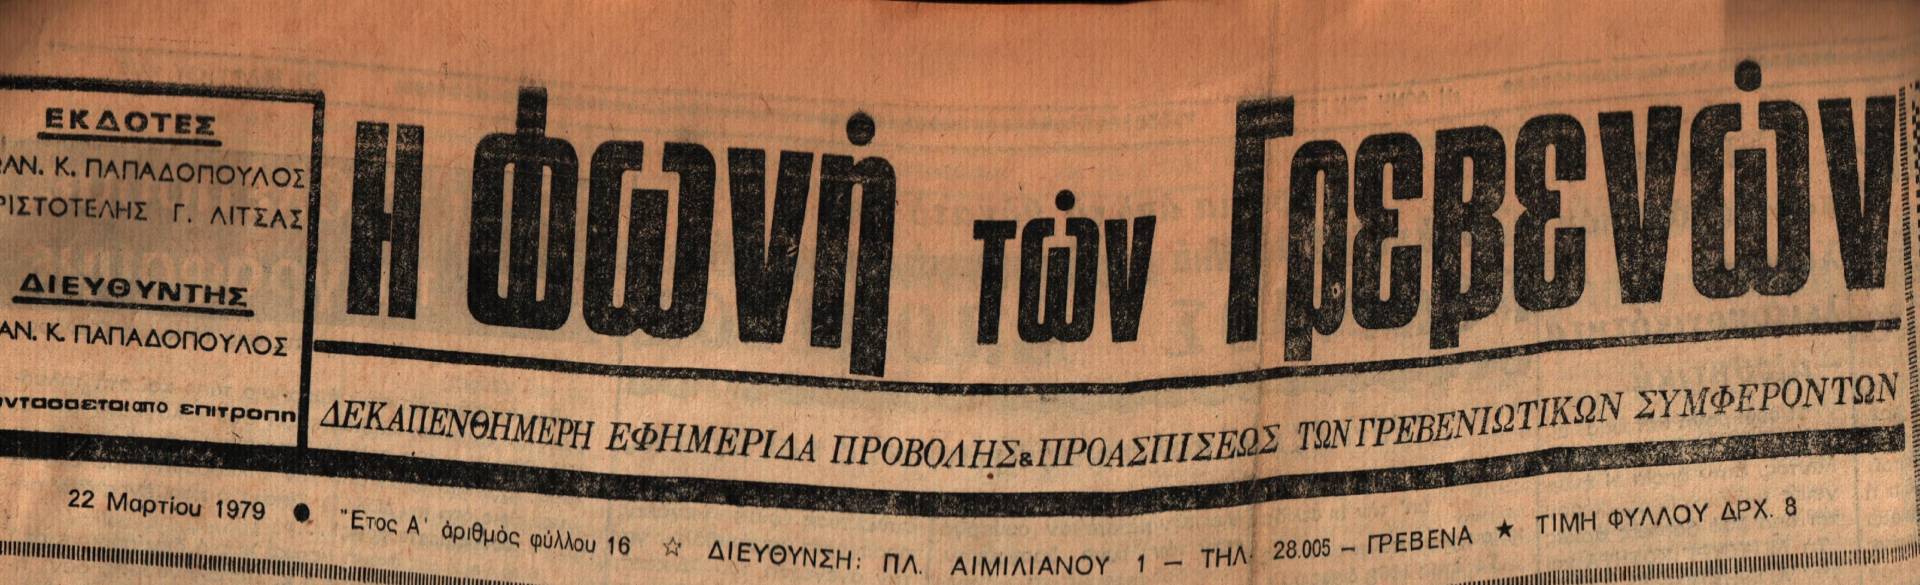 22 Μαρτίου 1979: Η ιστορία των Γρεβενών μέσα από τον Τοπικό Τύπο.Σήμερα:Από τους μεγαλύτερους στην Ελλάδα